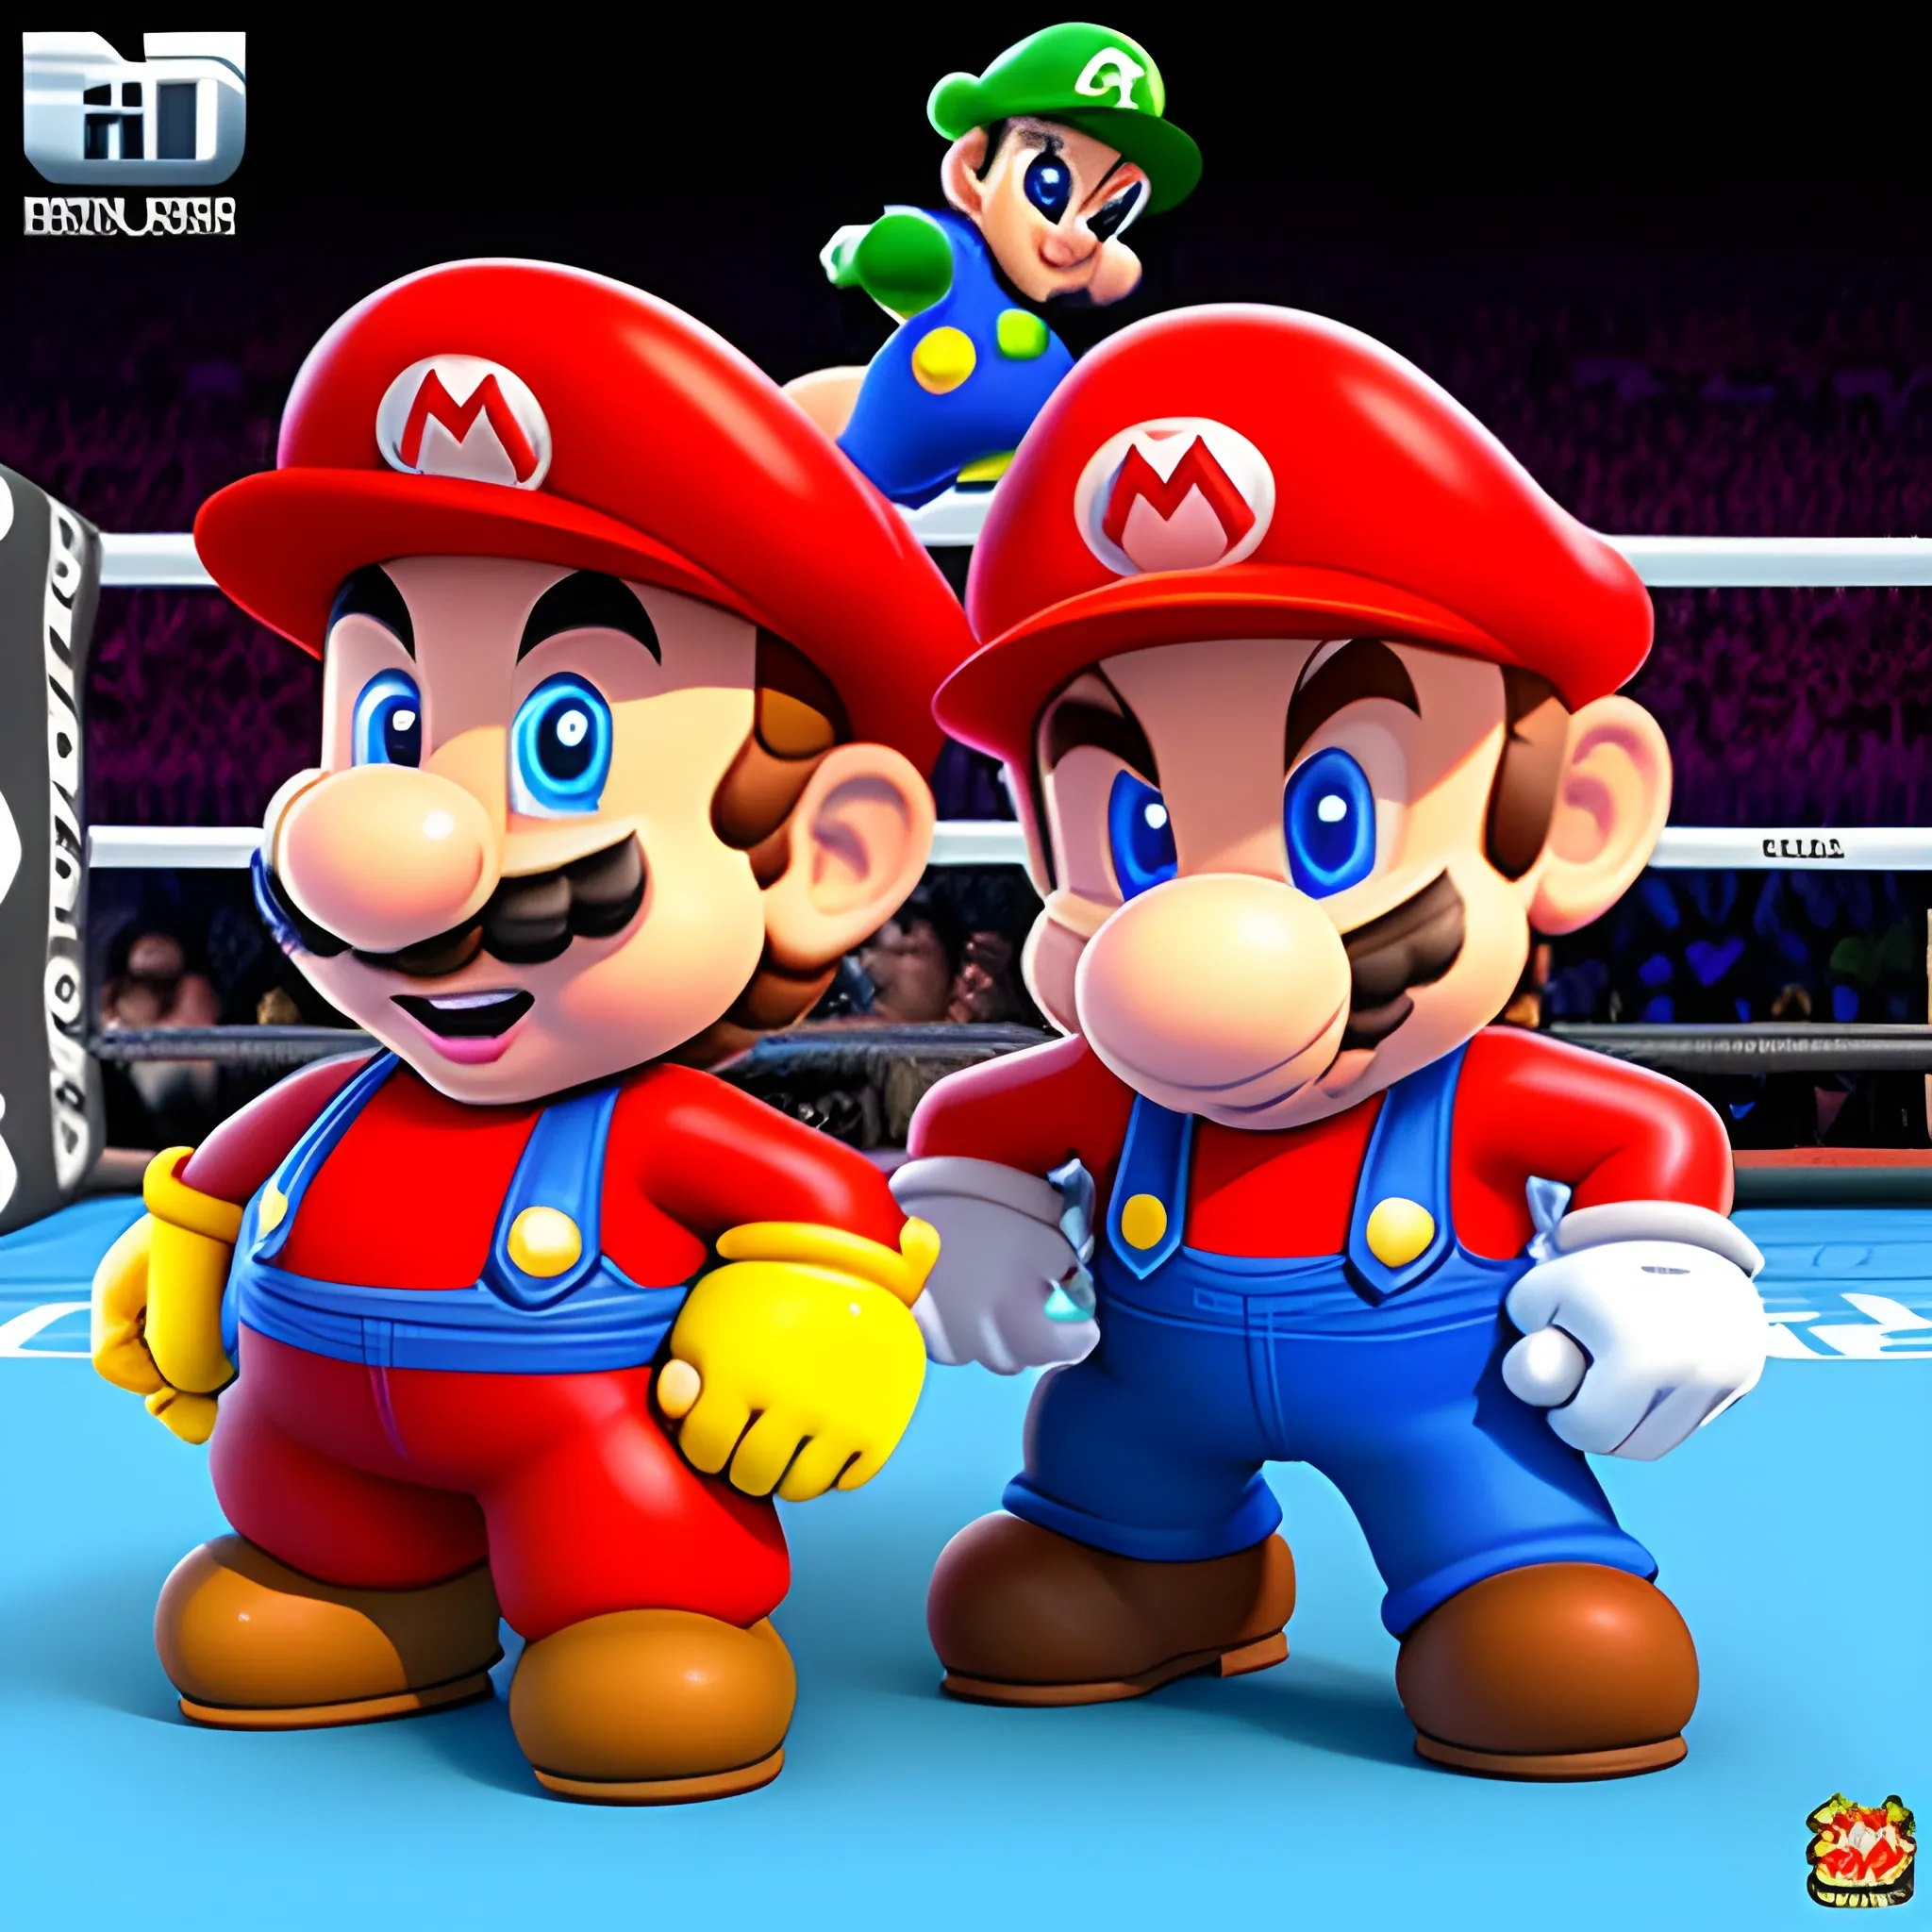 Todos los personajes existentes de Super Mario Wonder, mirando una pelea de boxeo, 3D